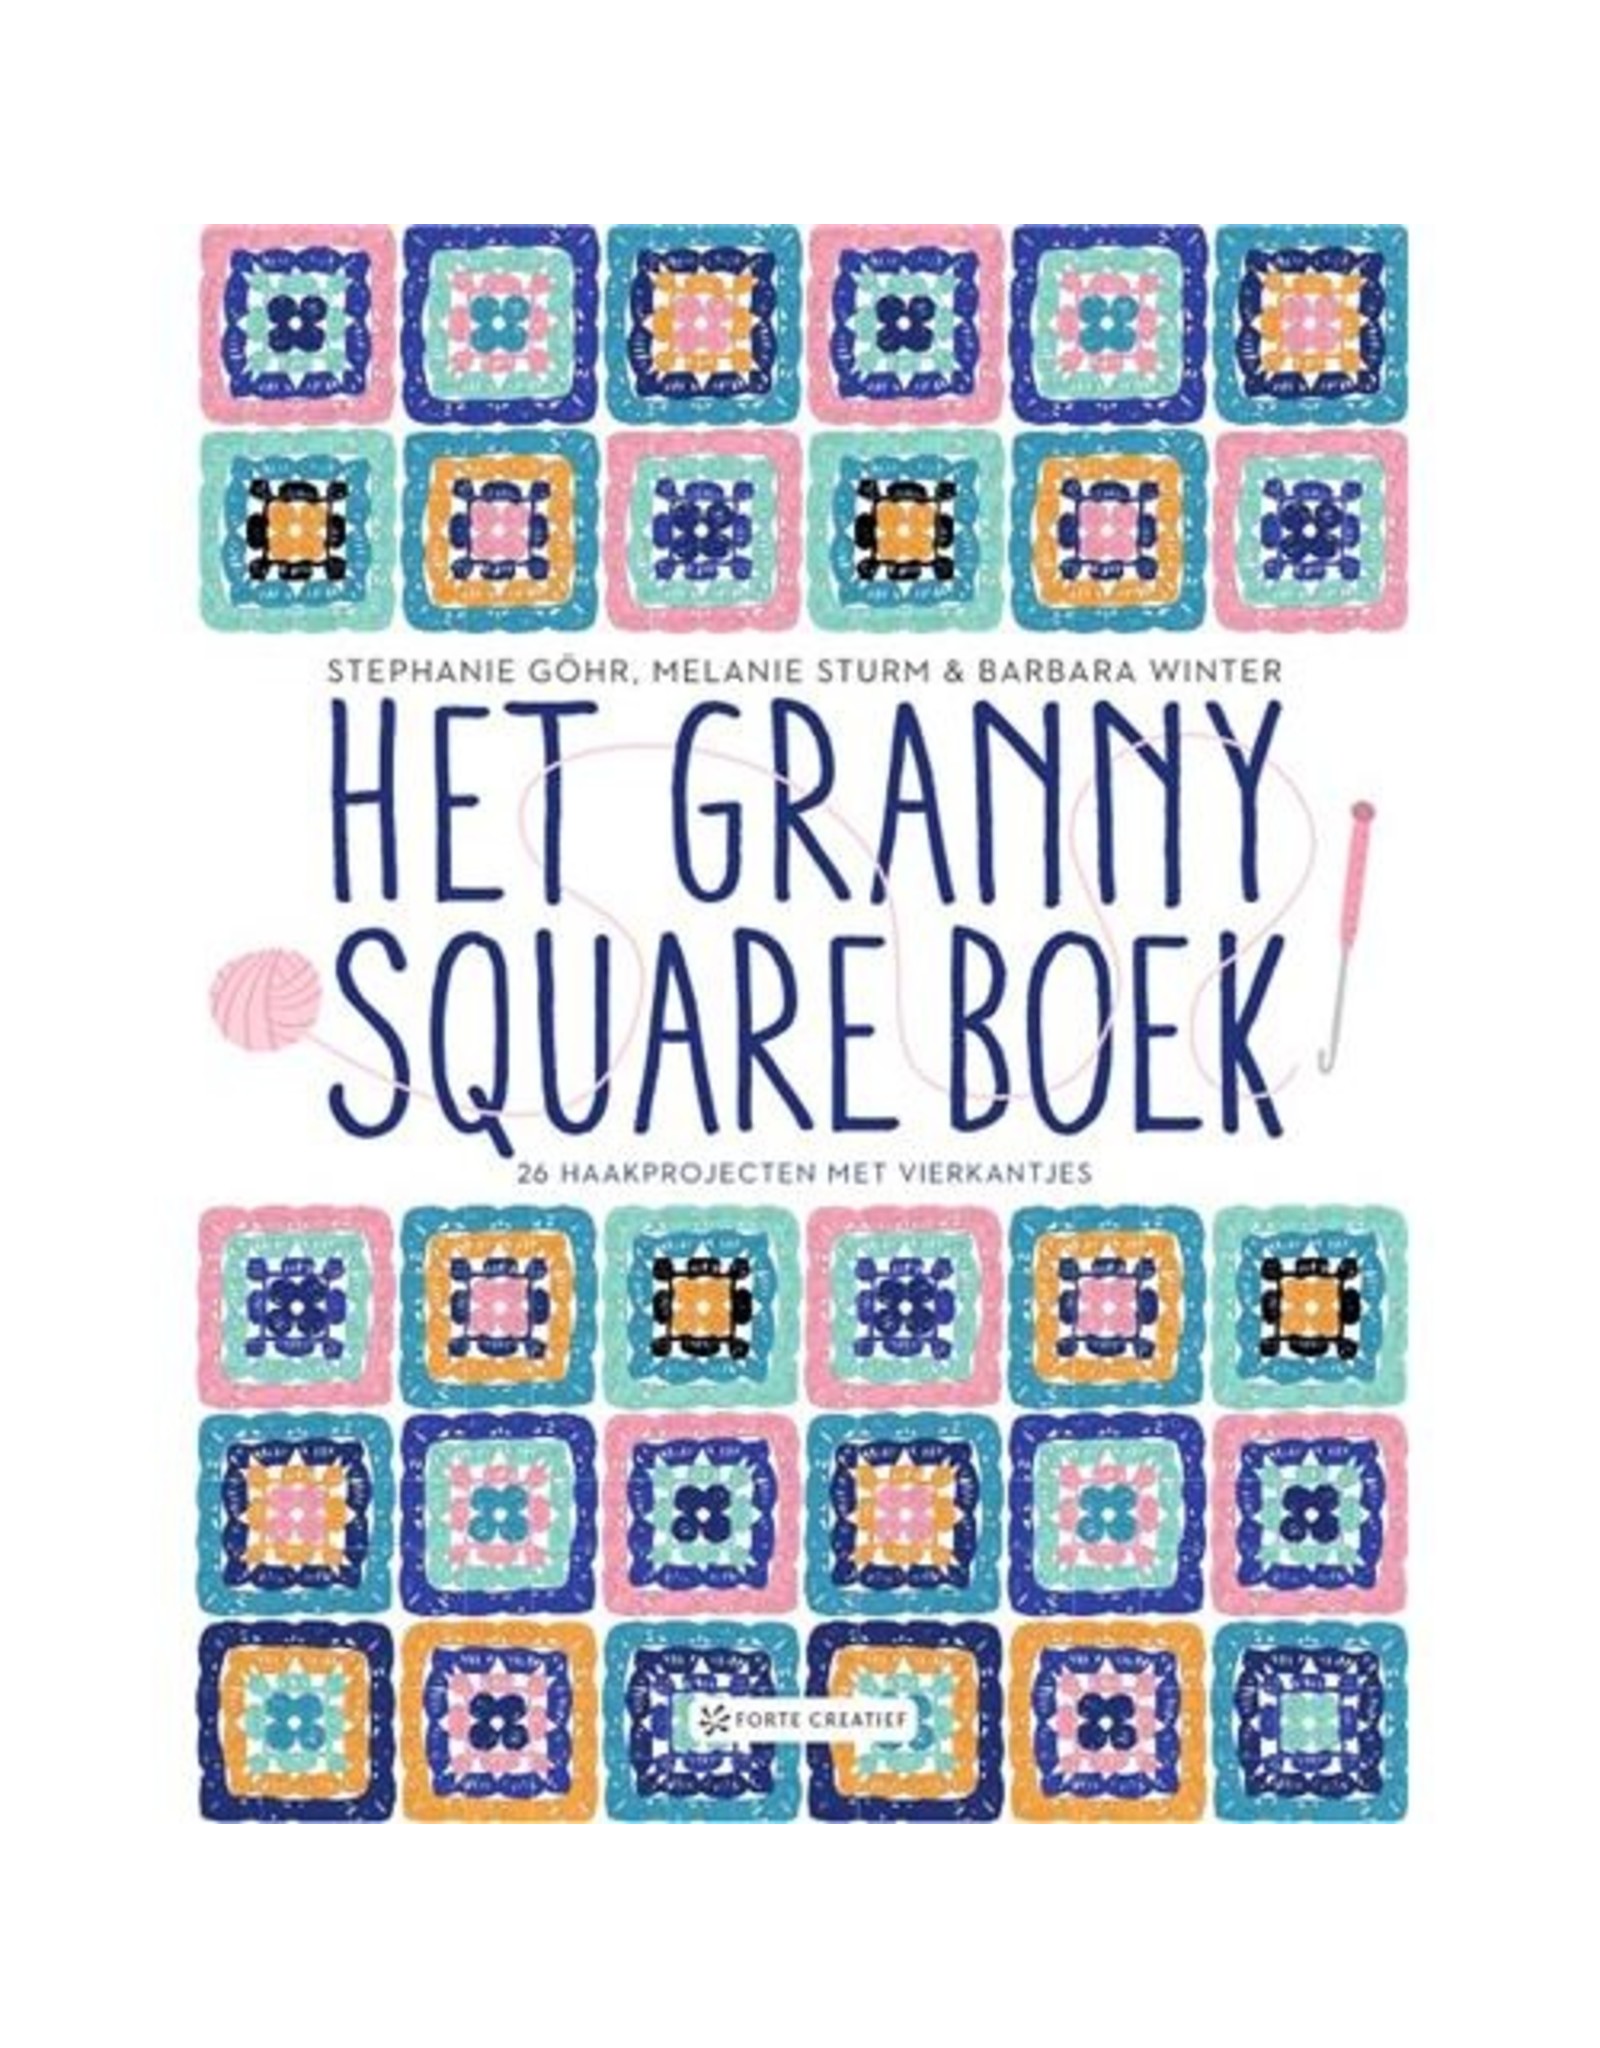 Het granny square boek - Stephanie Göhr E.A. - 1pc